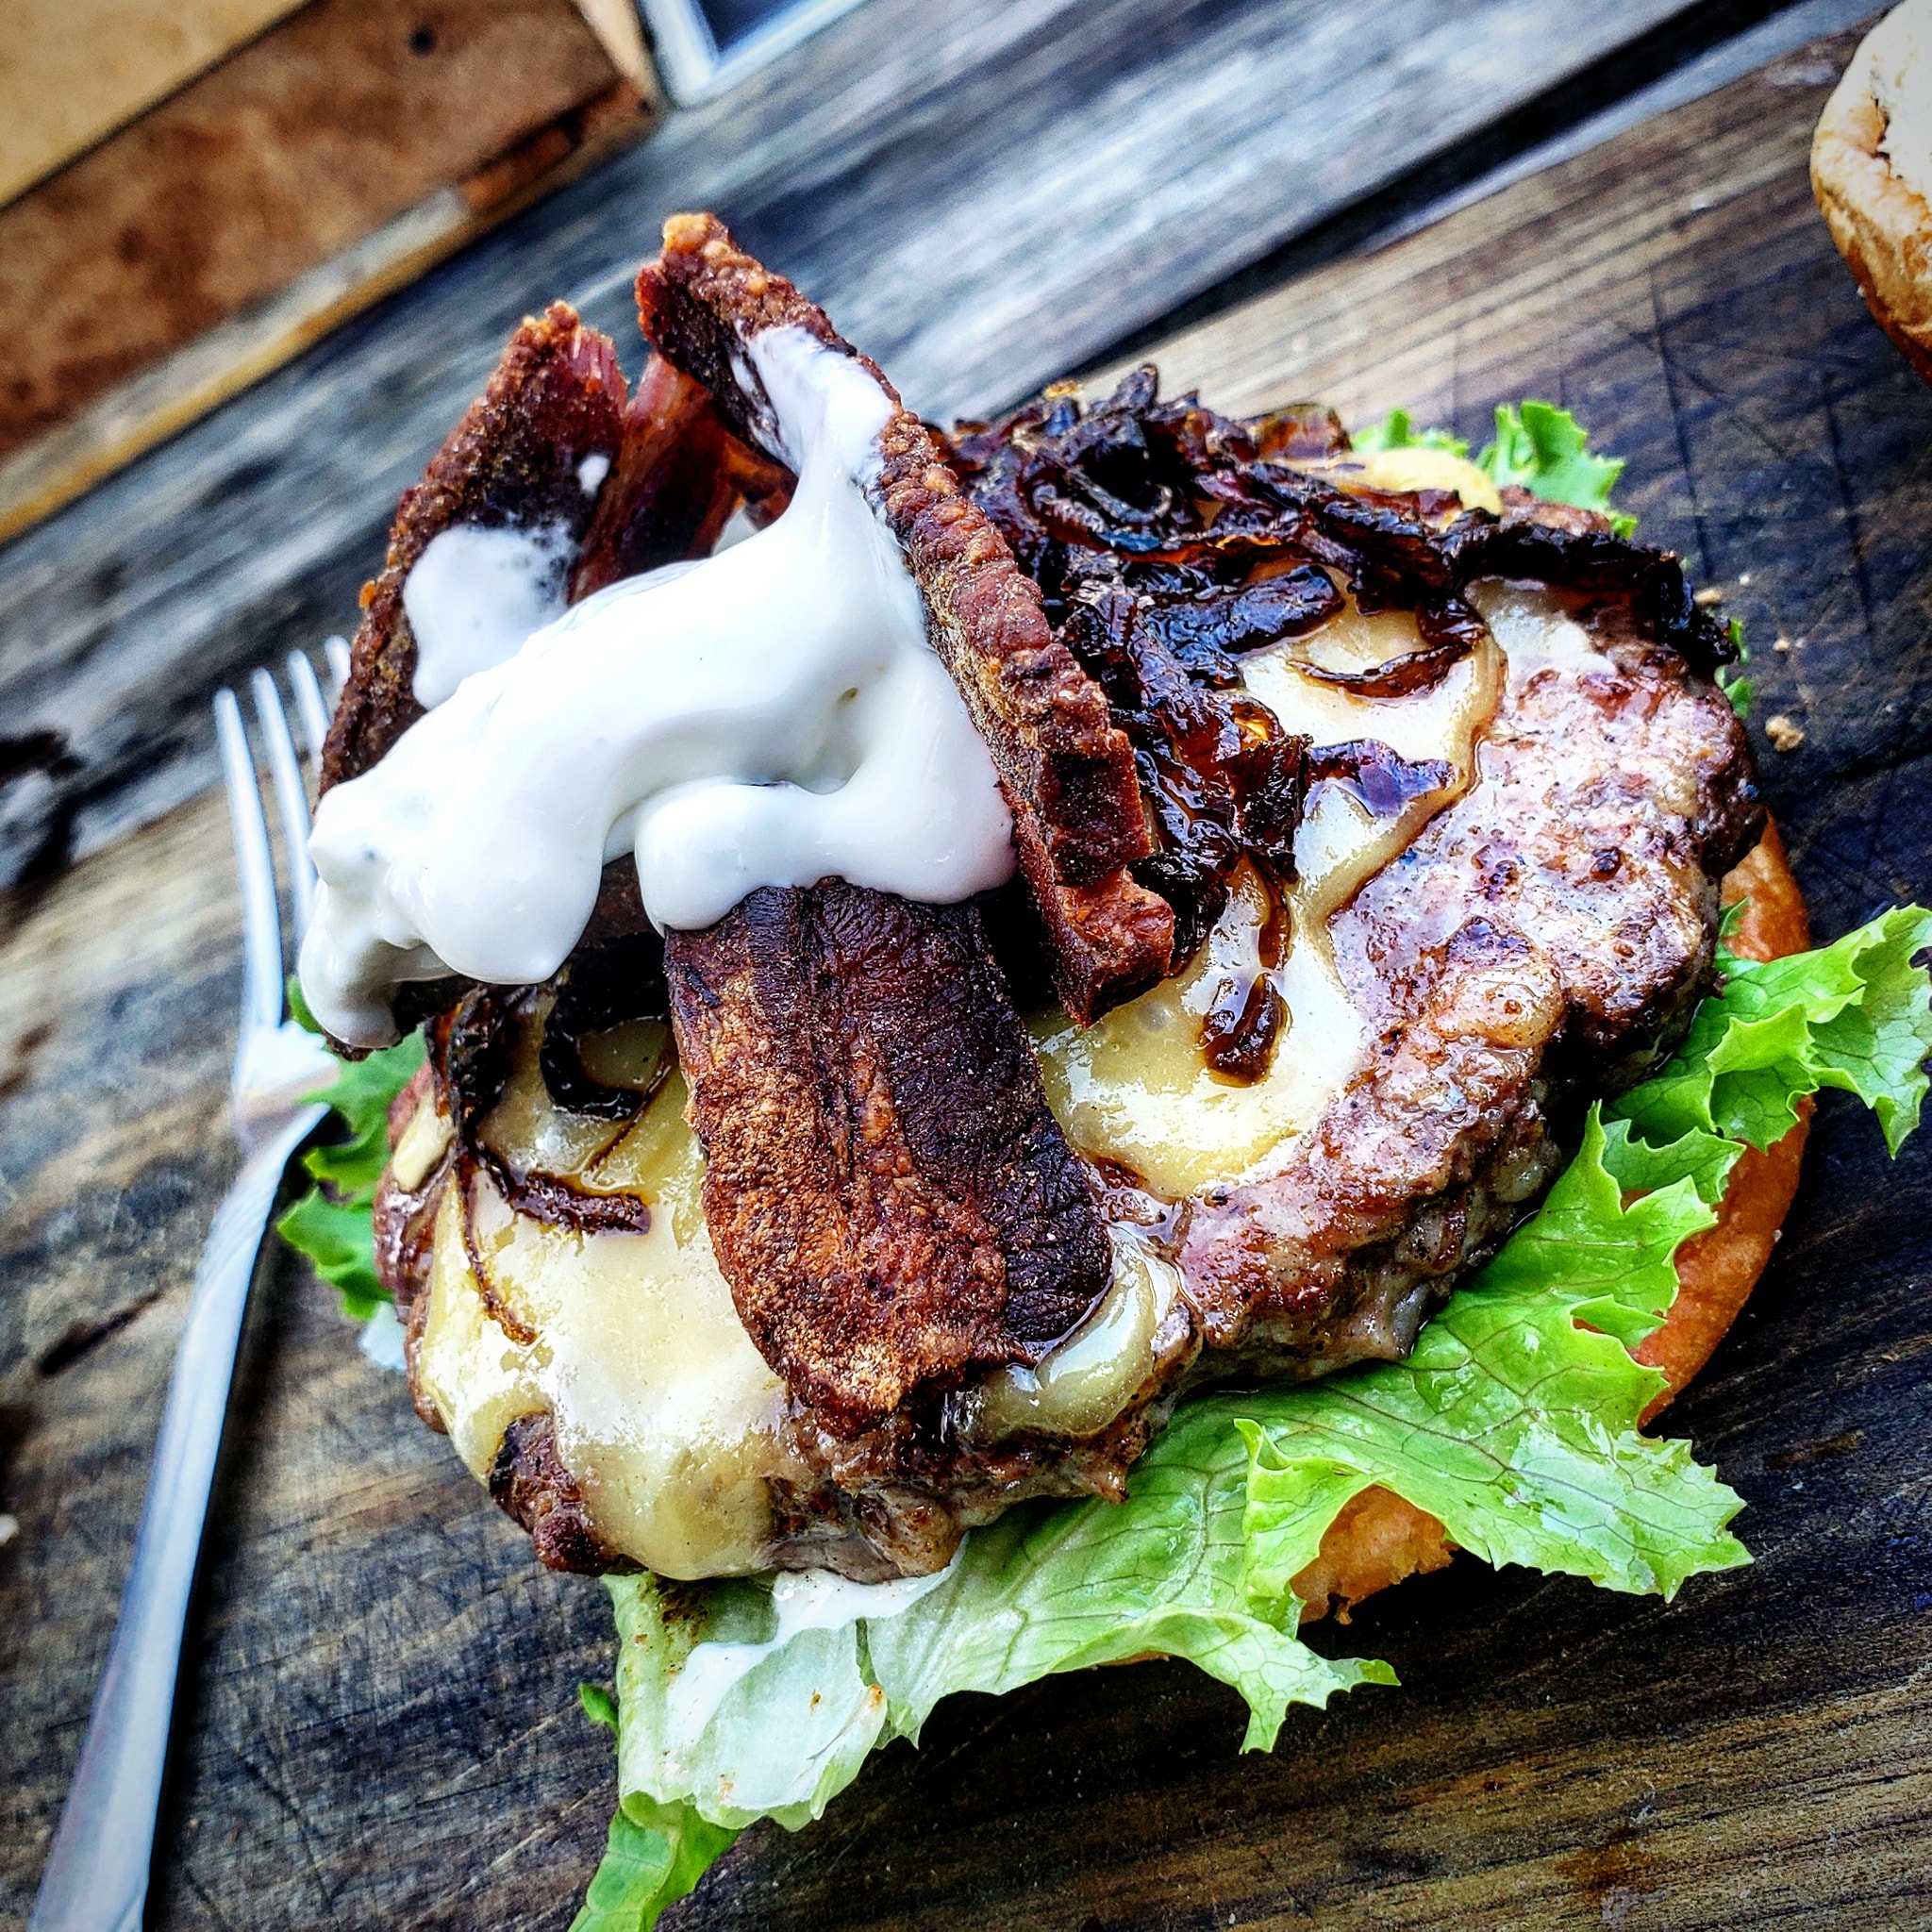 Alaburger Puerto Escondido | The best burgers in Zicatela